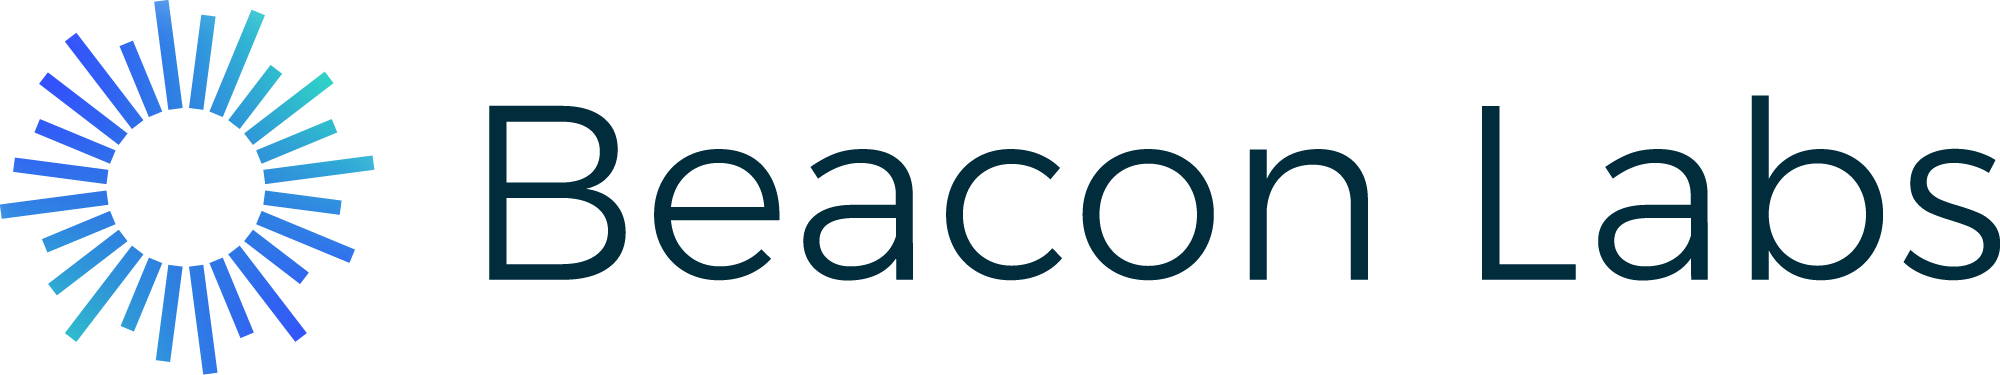 Beacon Labs logo